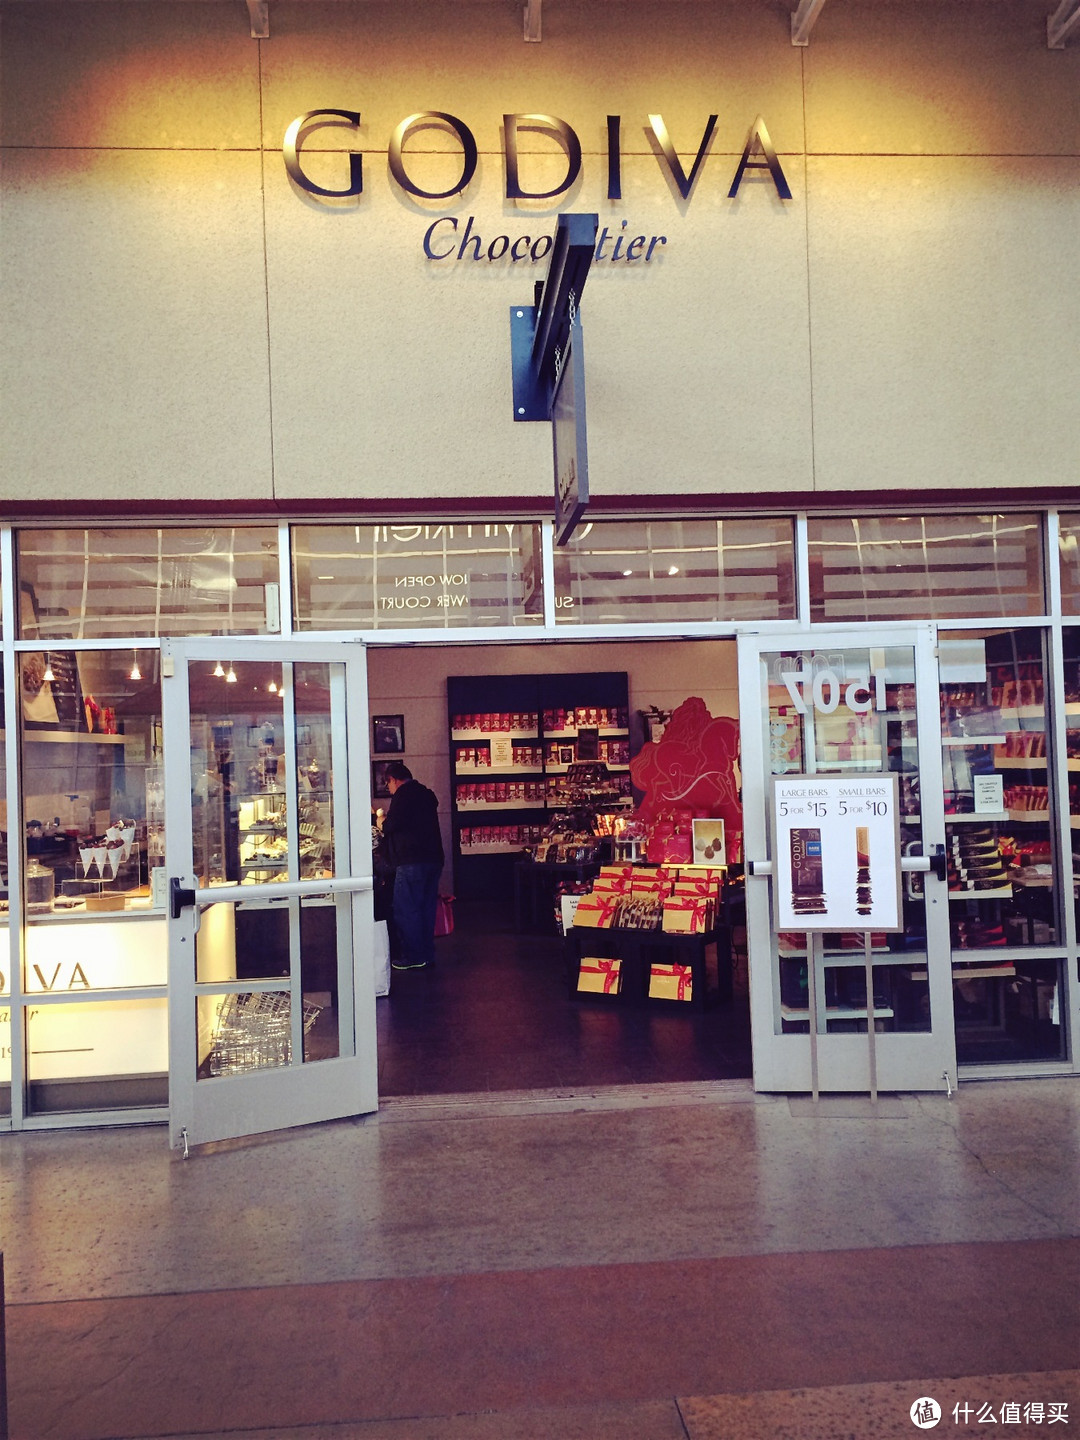 只在Vegas的Outlets看到过Godiva的折扣店，喜欢的不要错过↑